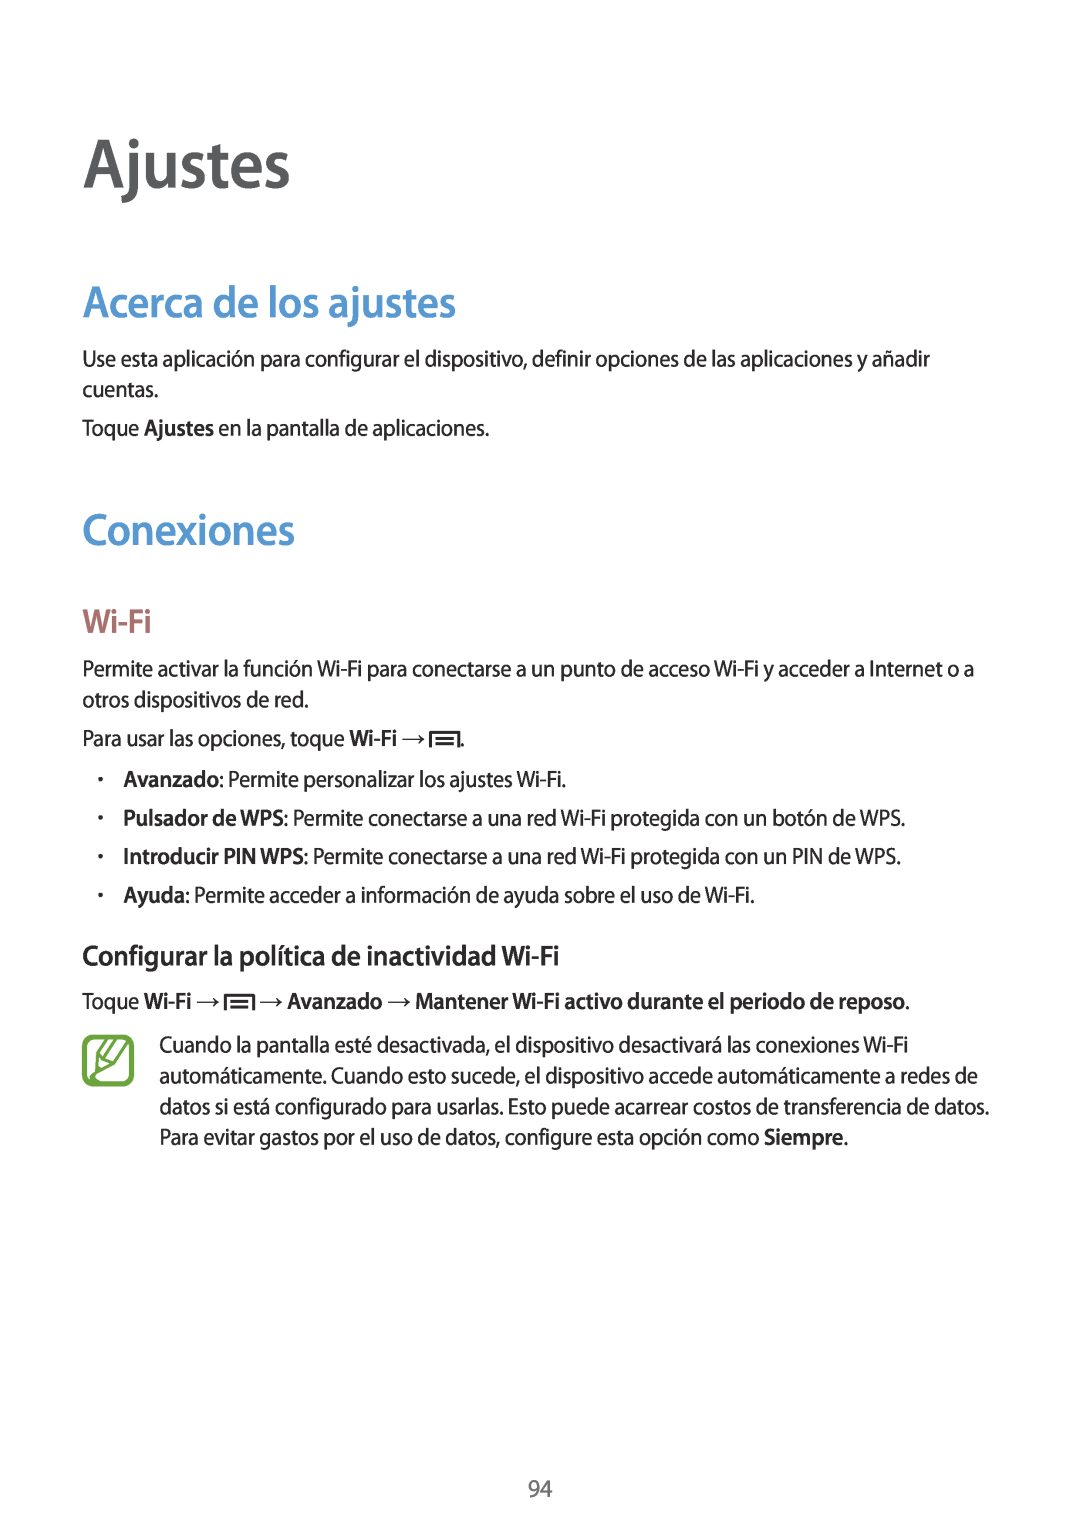 Samsung GT-I9105UANXEO manual Ajustes, Acerca de los ajustes, Conexiones, Configurar la política de inactividad Wi-Fi 